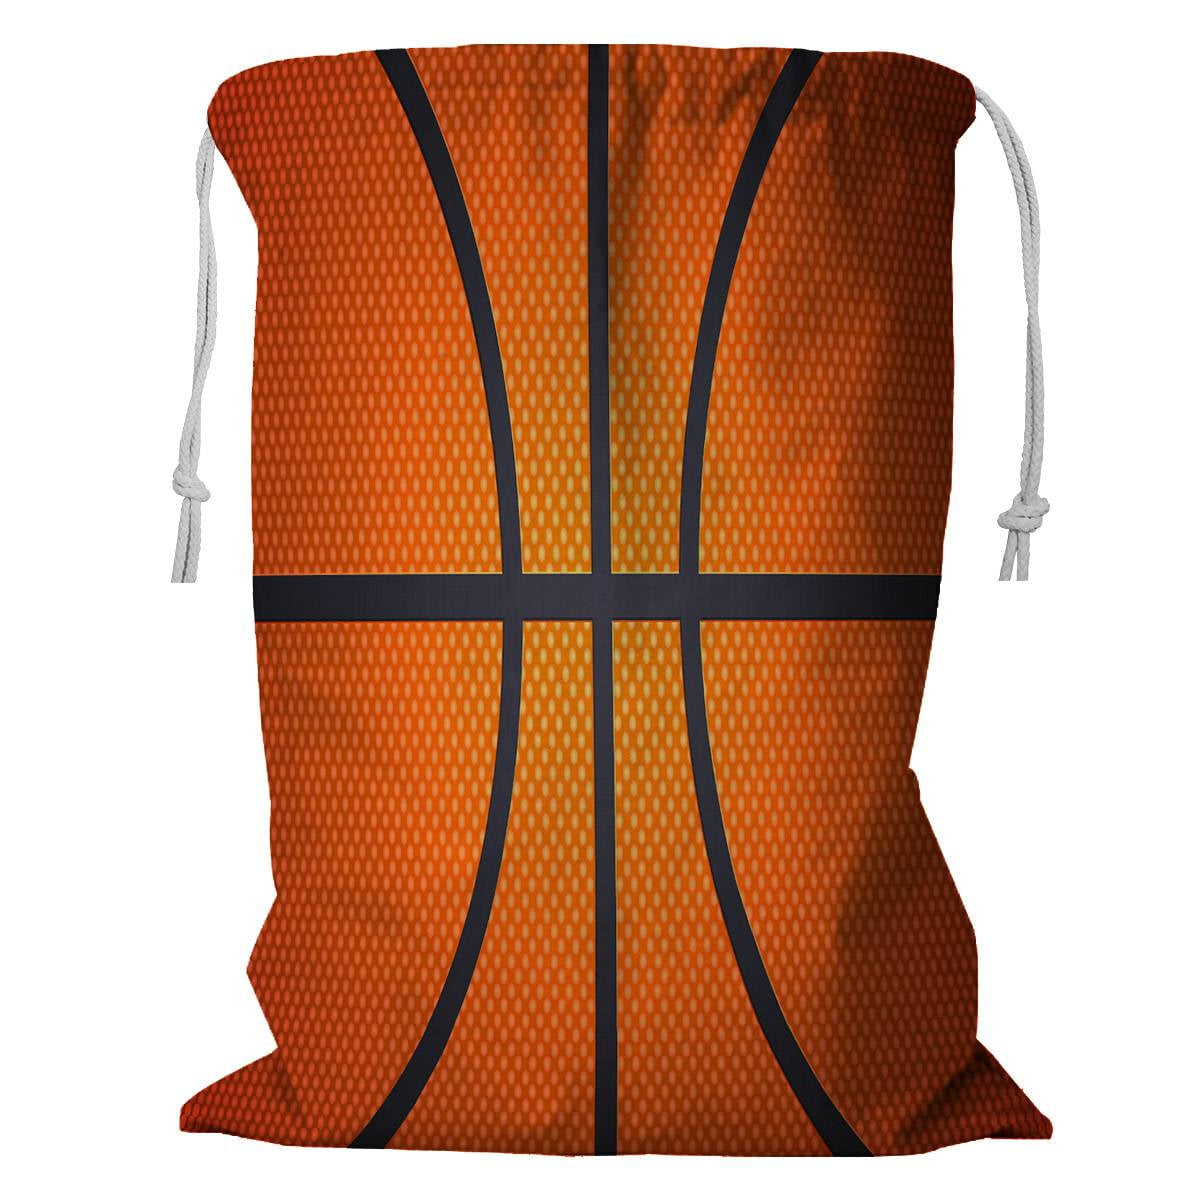 ECZJNT basketball sport Storage Basket Laundry Bag with Drawstring ...